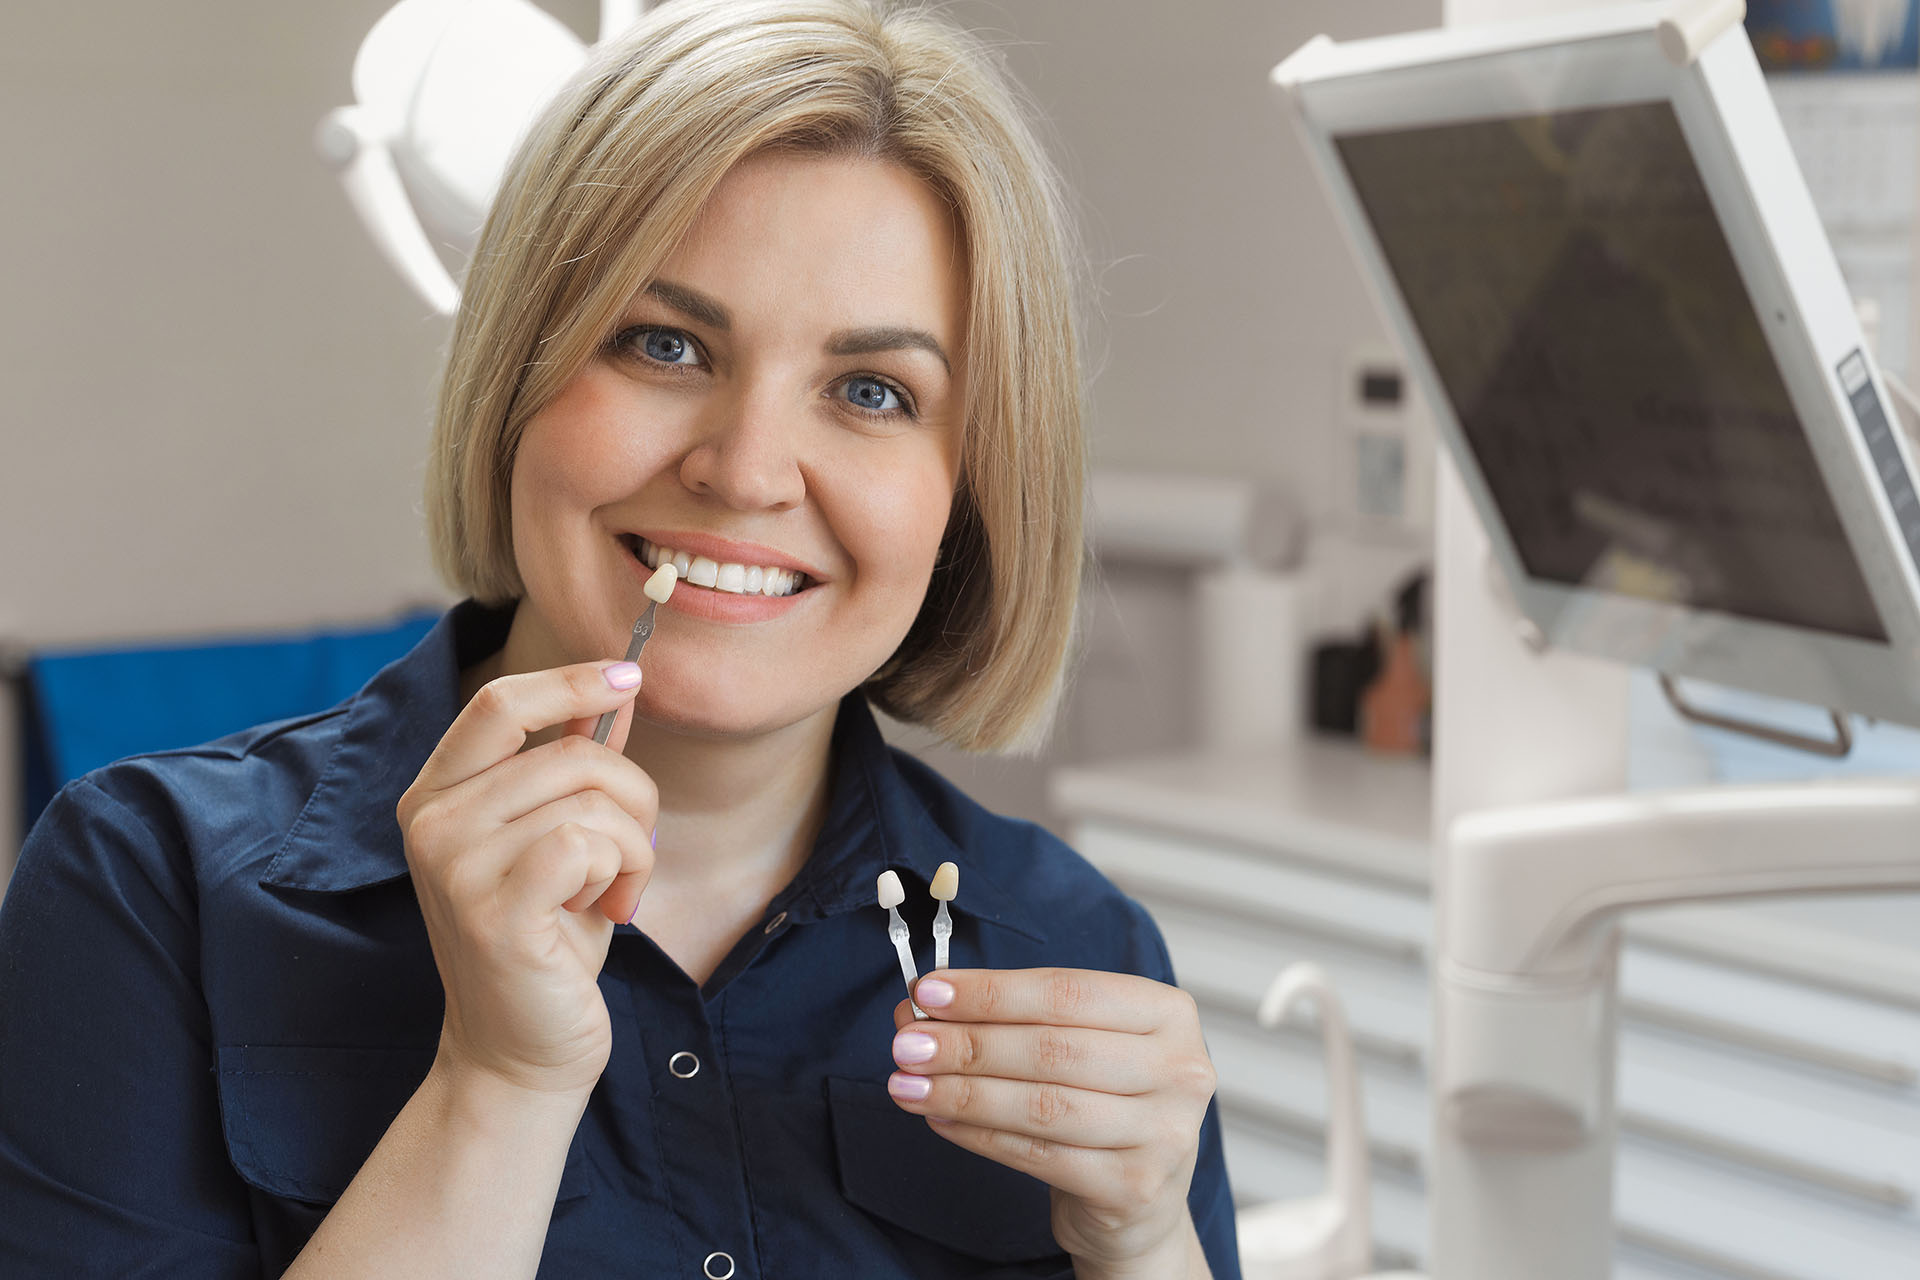 Clínica Dental Andrea Compte, tu Centro Odontológico especializado. Implantes dentales (Implantología) en Sant Jordi. Paciente eligiendo el color y material para el implante dental.